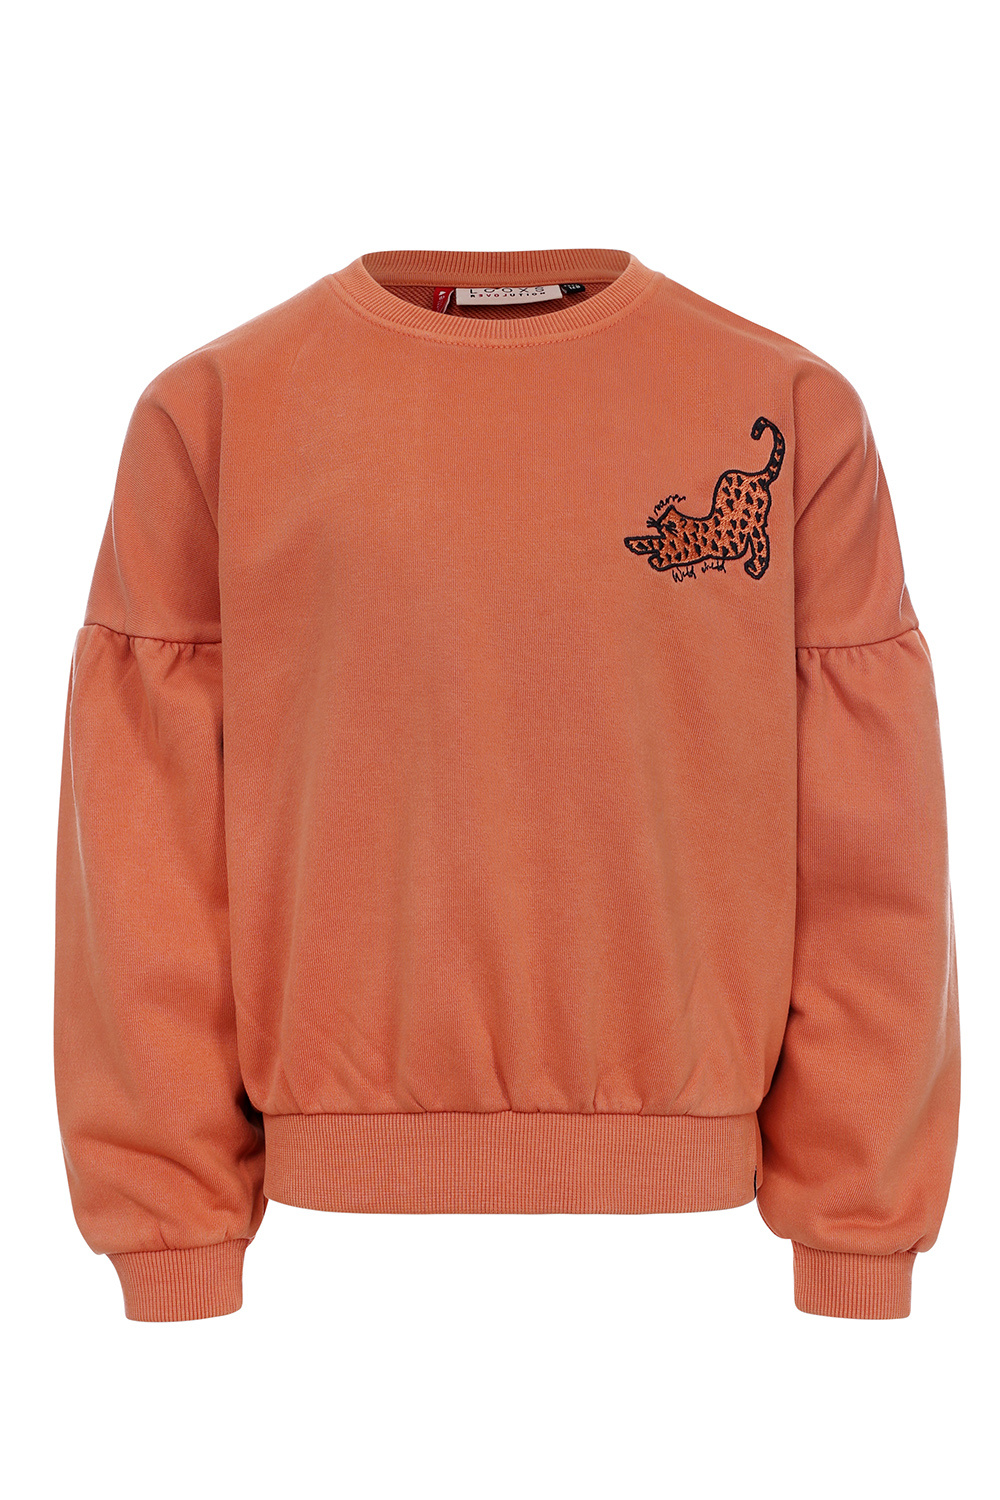 Looxs Revolution 2331-7327-382 Meisjes Sweater/Vest - Maat 110 - Warm Orange van